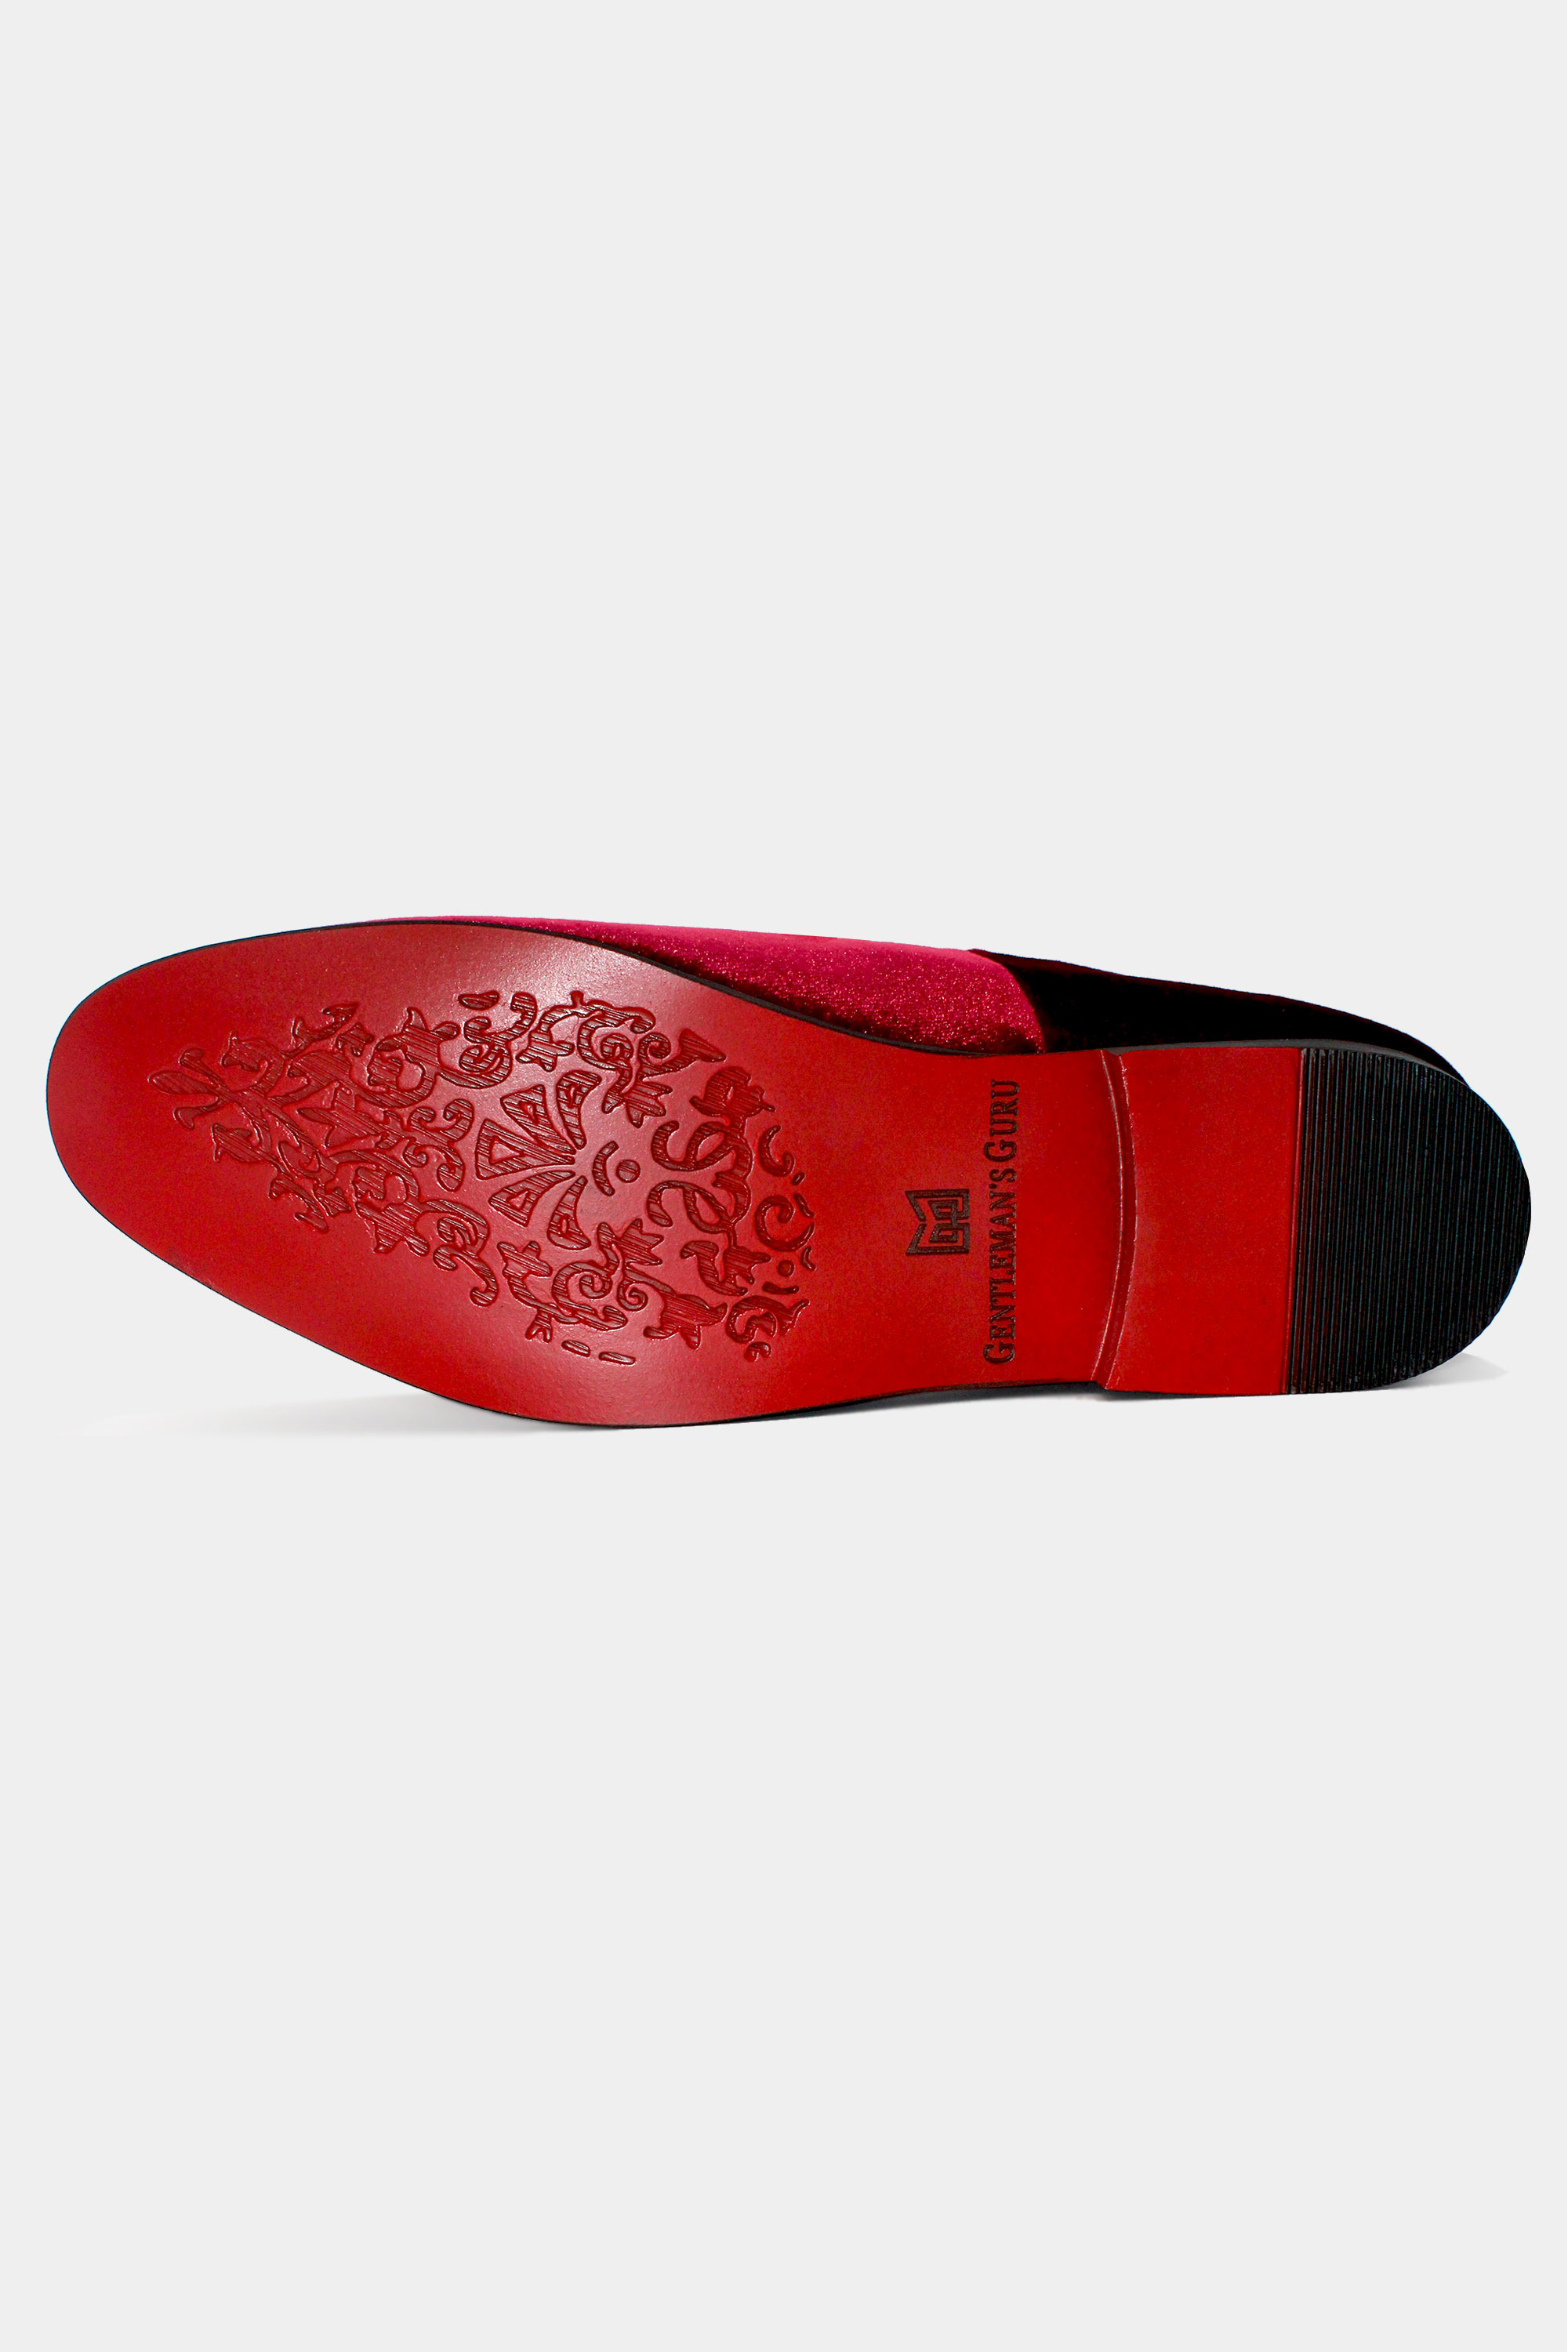 Men's Handmade Tassels Loafer Velvet Shoes